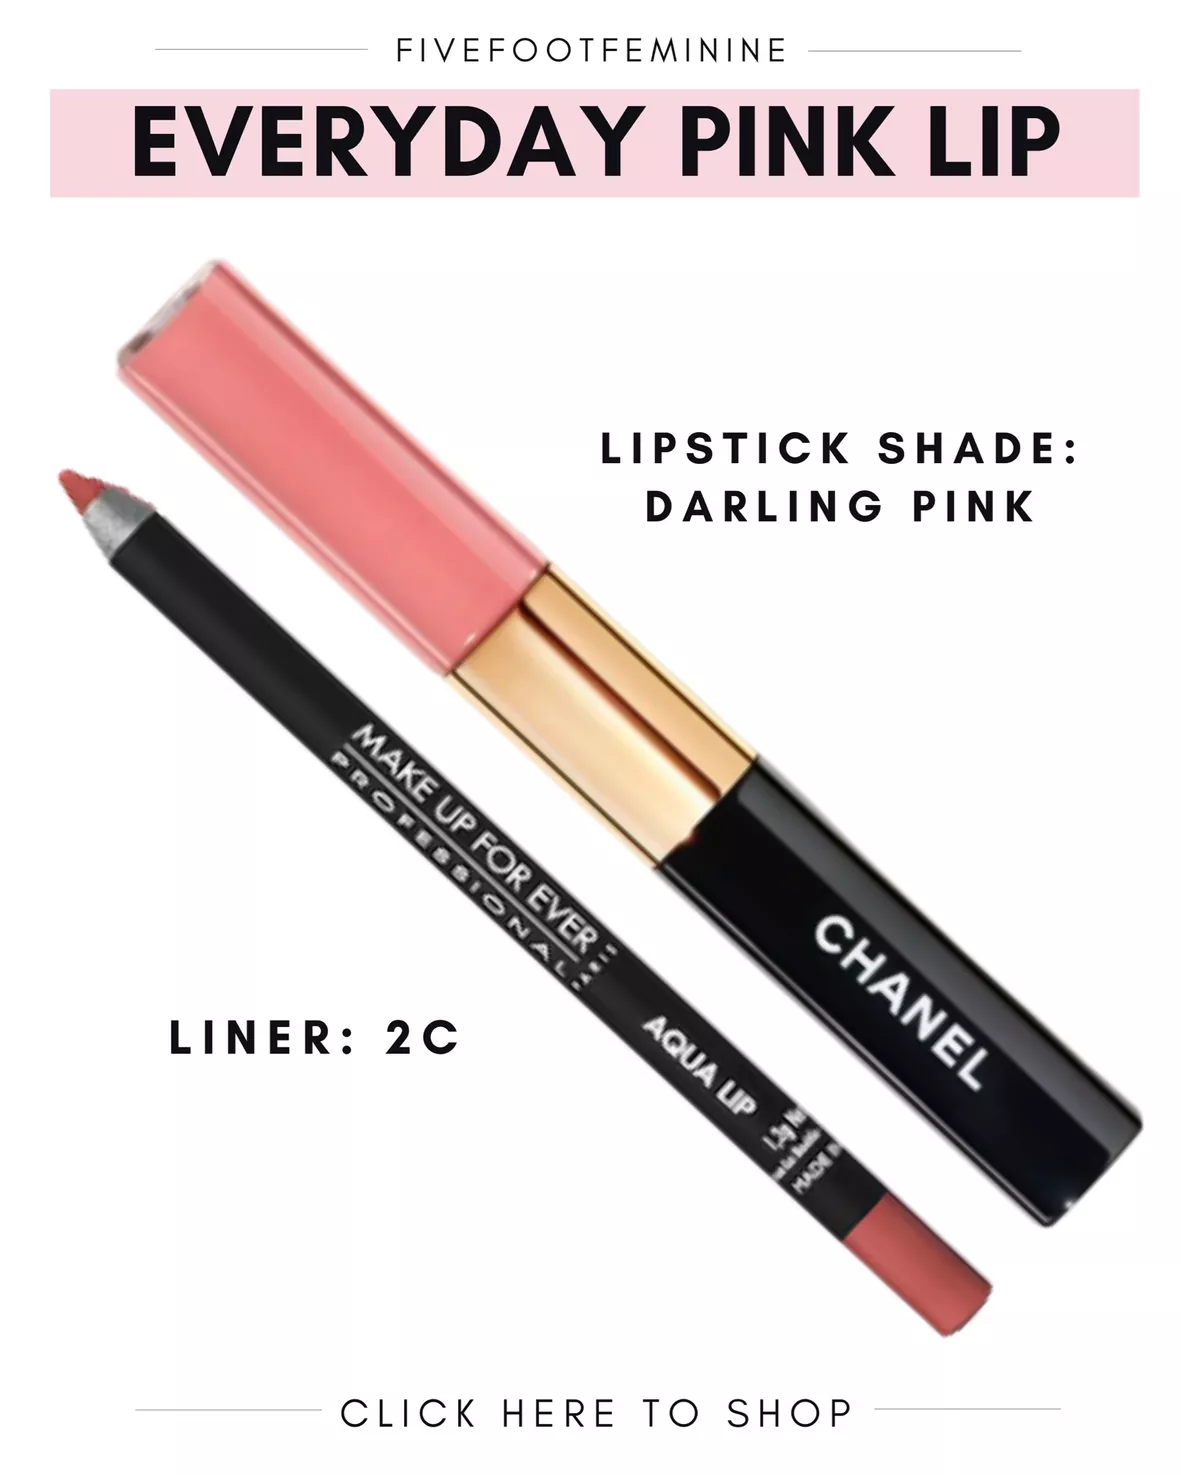  Chanel Le Rouge Duo Ultra Tenue Ultra Wear Liquid Lip Colour -  49 E Women Lipstick 0.26 oz : Beauty & Personal Care